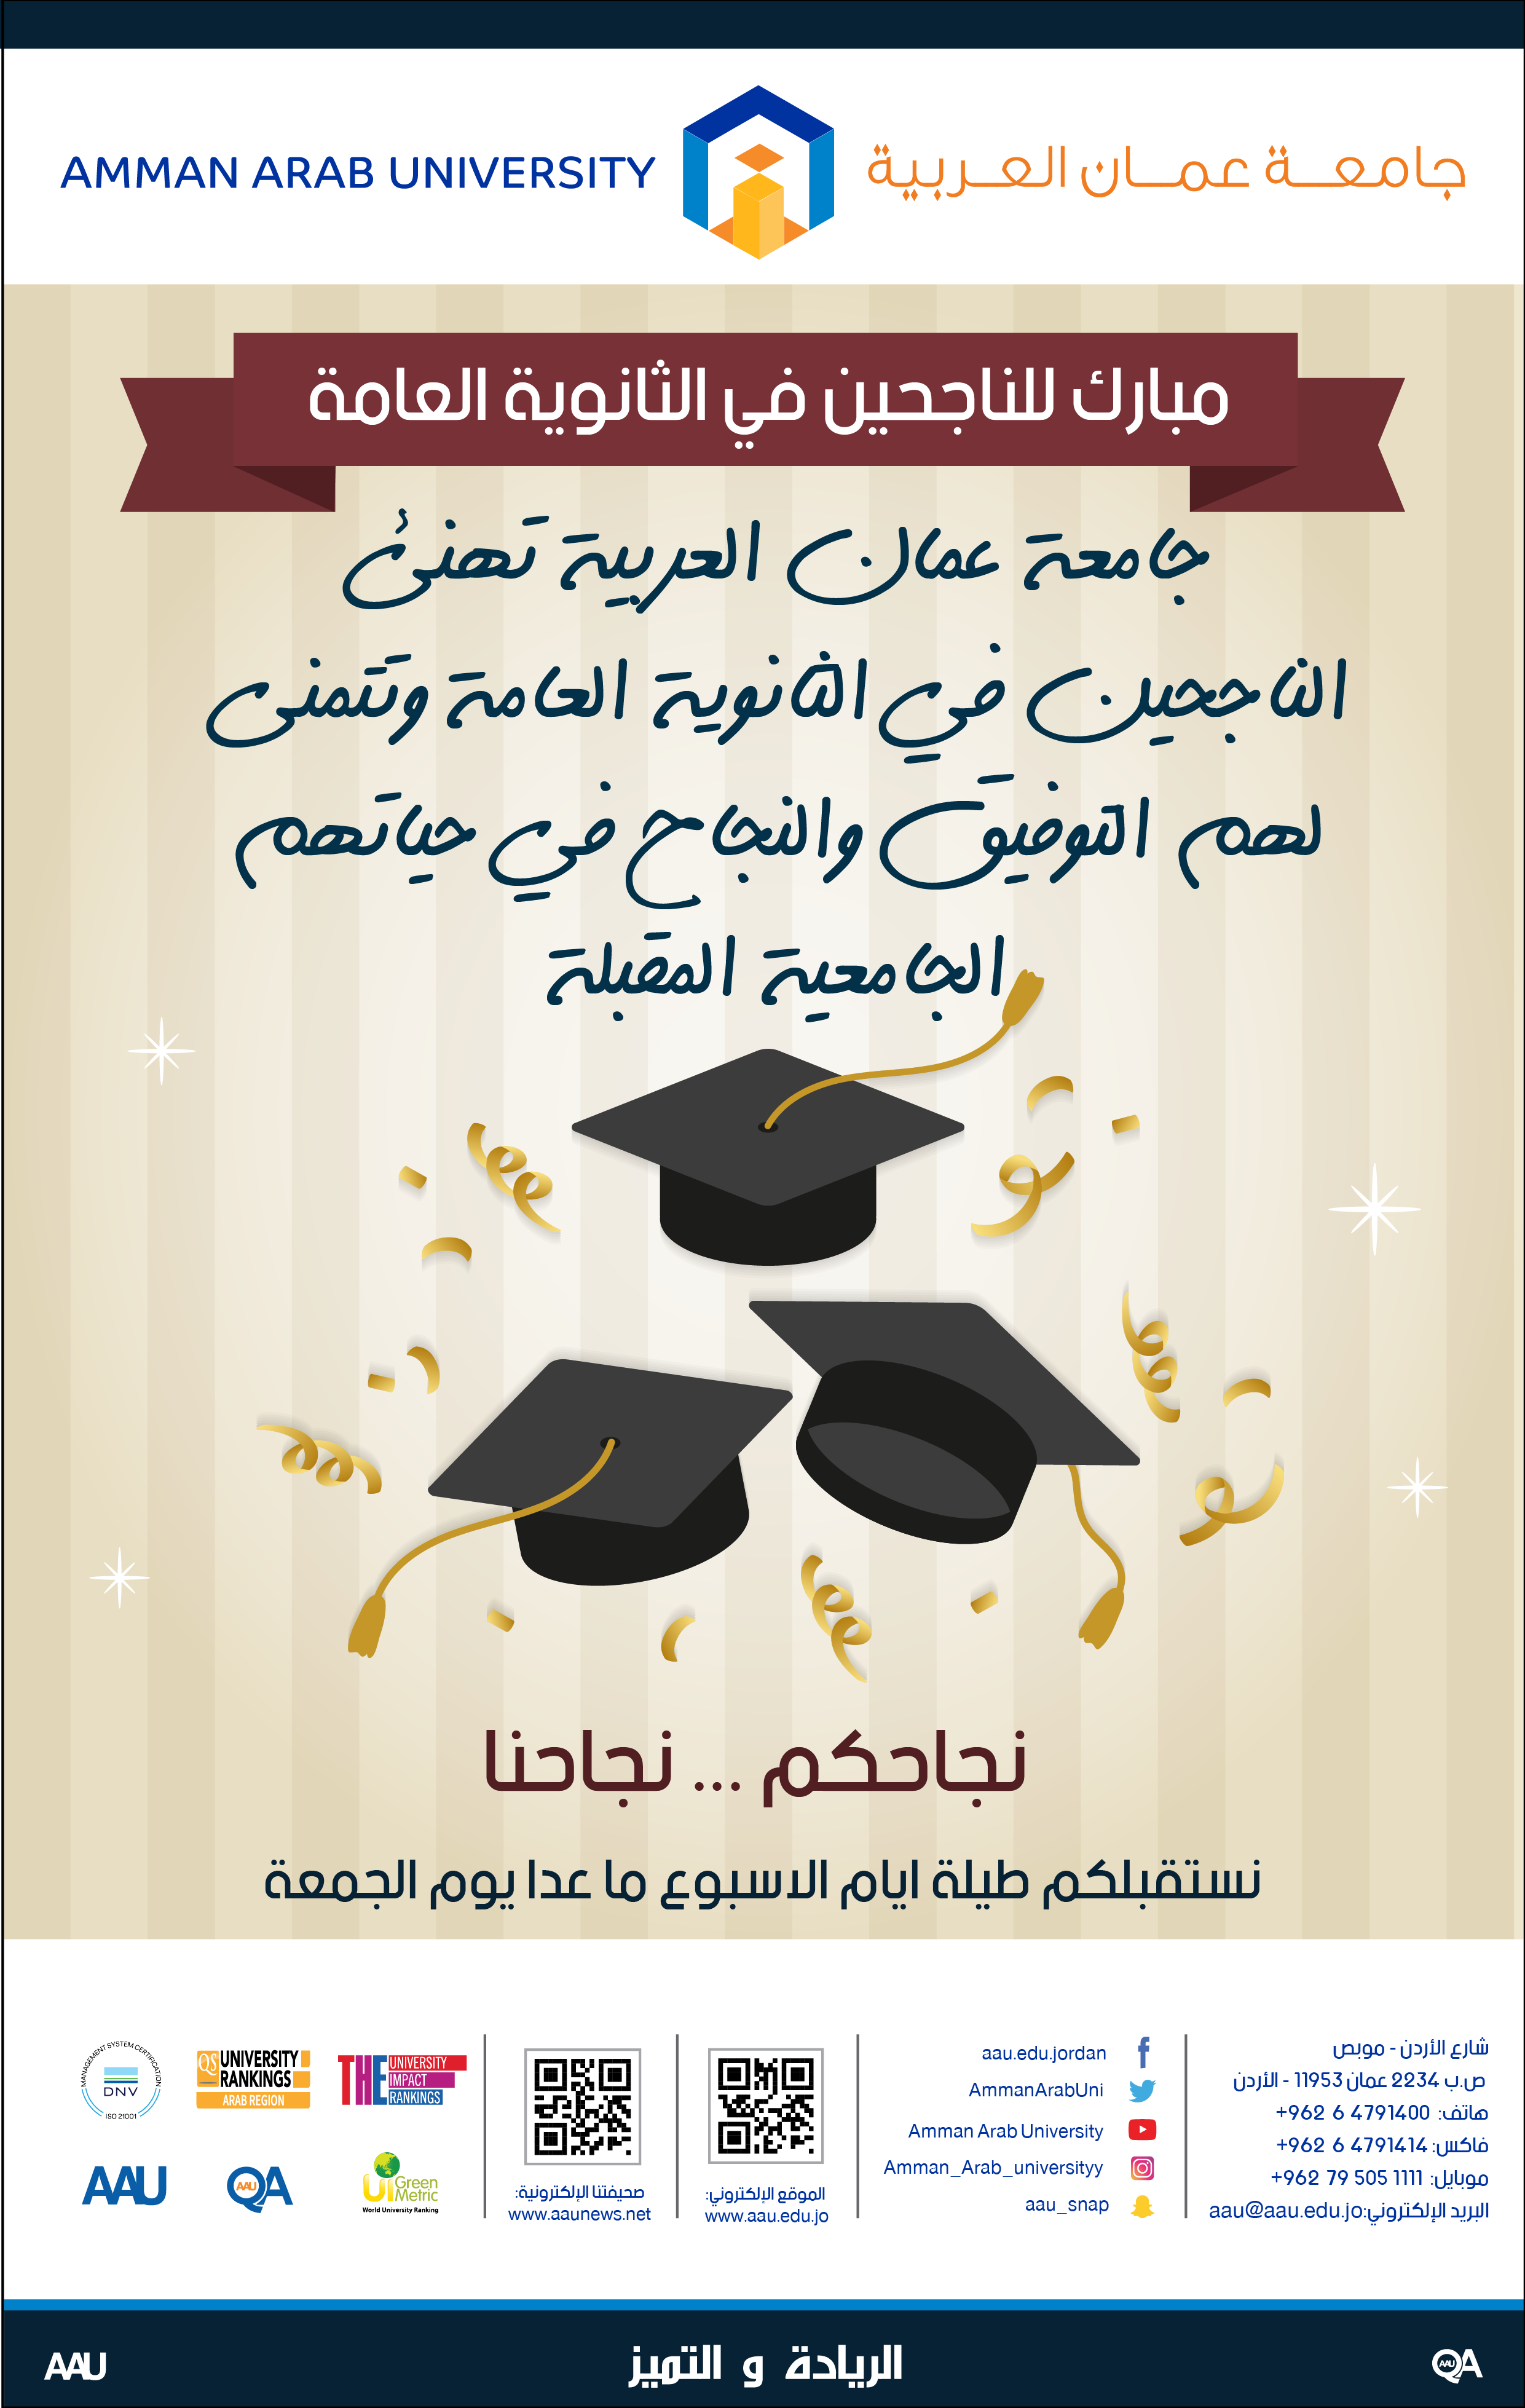 رئيس وأسرة جامعة عمان العربية يهنئون الناجحين في الثانوية العامة